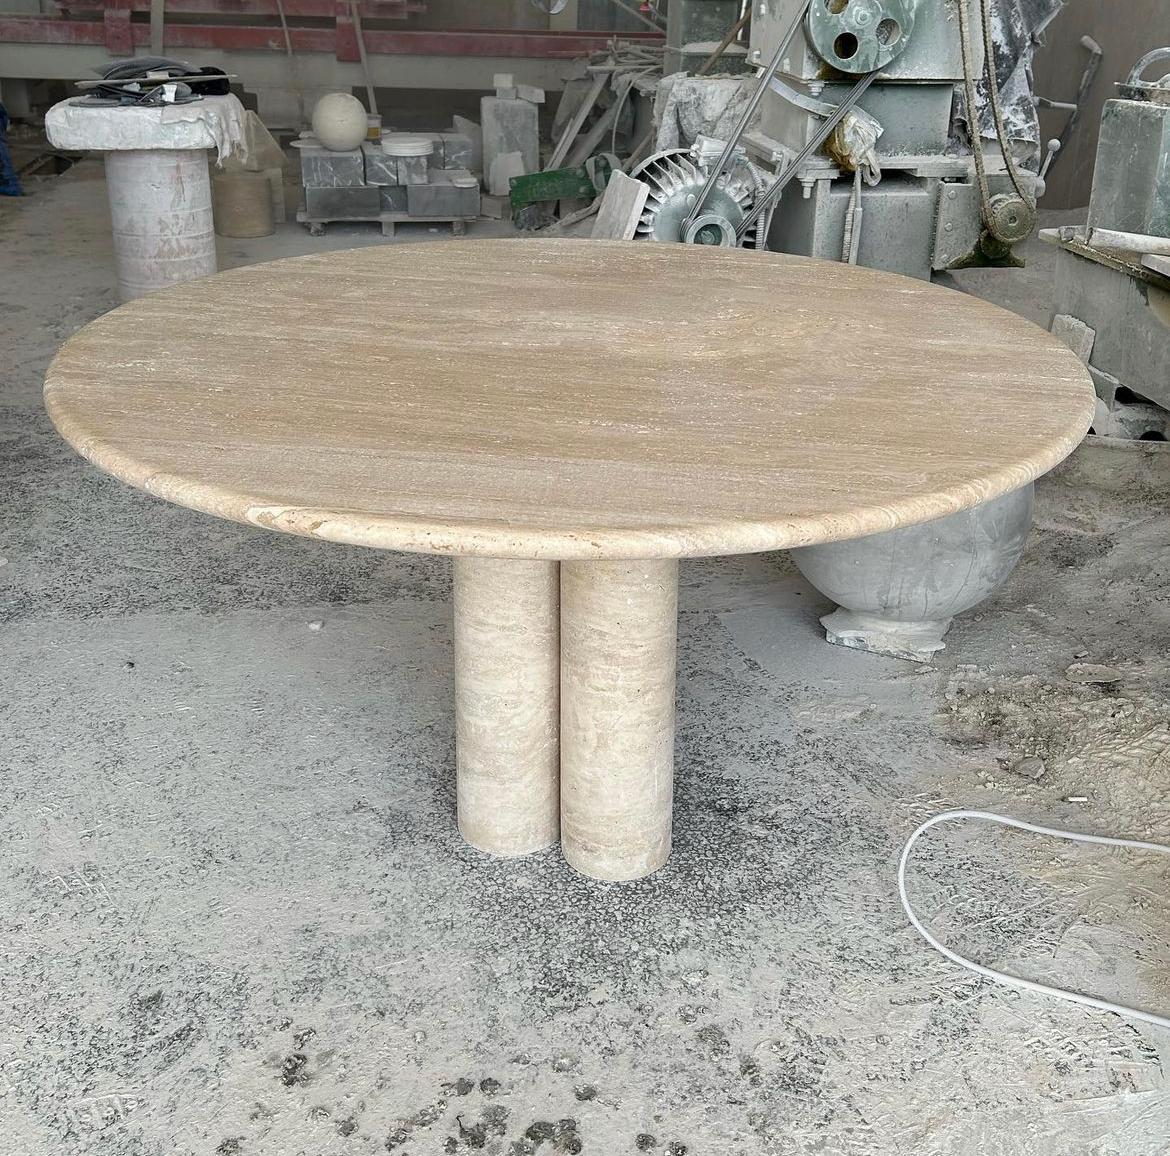 Dieser minimalistische Tisch aus massivem Travertin verfügt über eine runde Tischplatte mit geschwungener Kante, die elegant auf drei zylindrischen Säulen ruht. 

Die Säulenbeine, die von den Vintage-Stücken von Mario Bellini inspiriert sind,